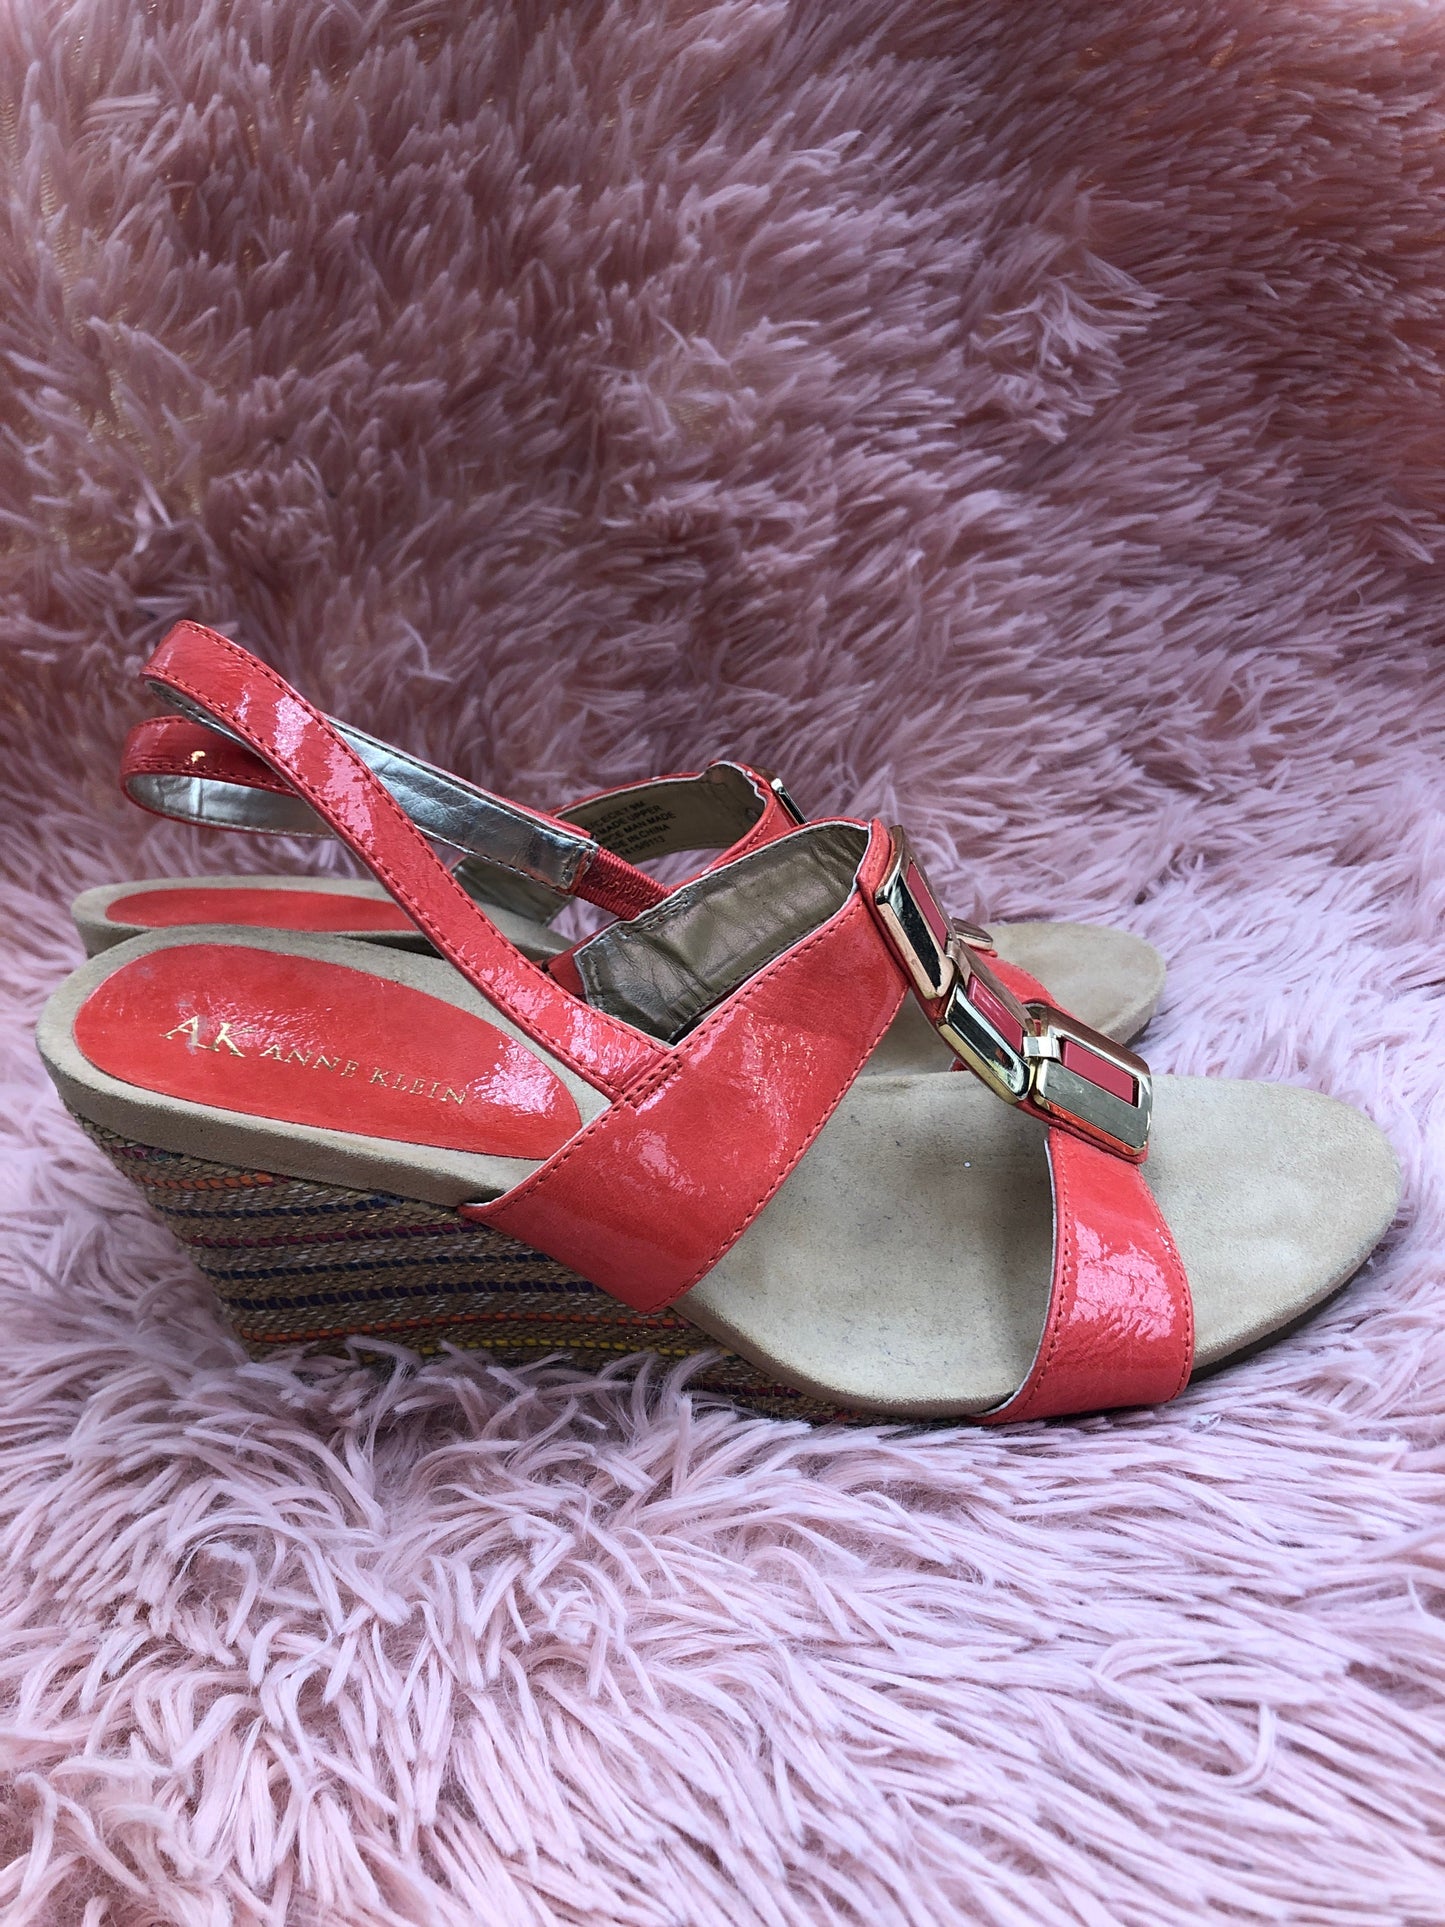 Orange Sandals Heels Wedge Anne Klein, Size 9